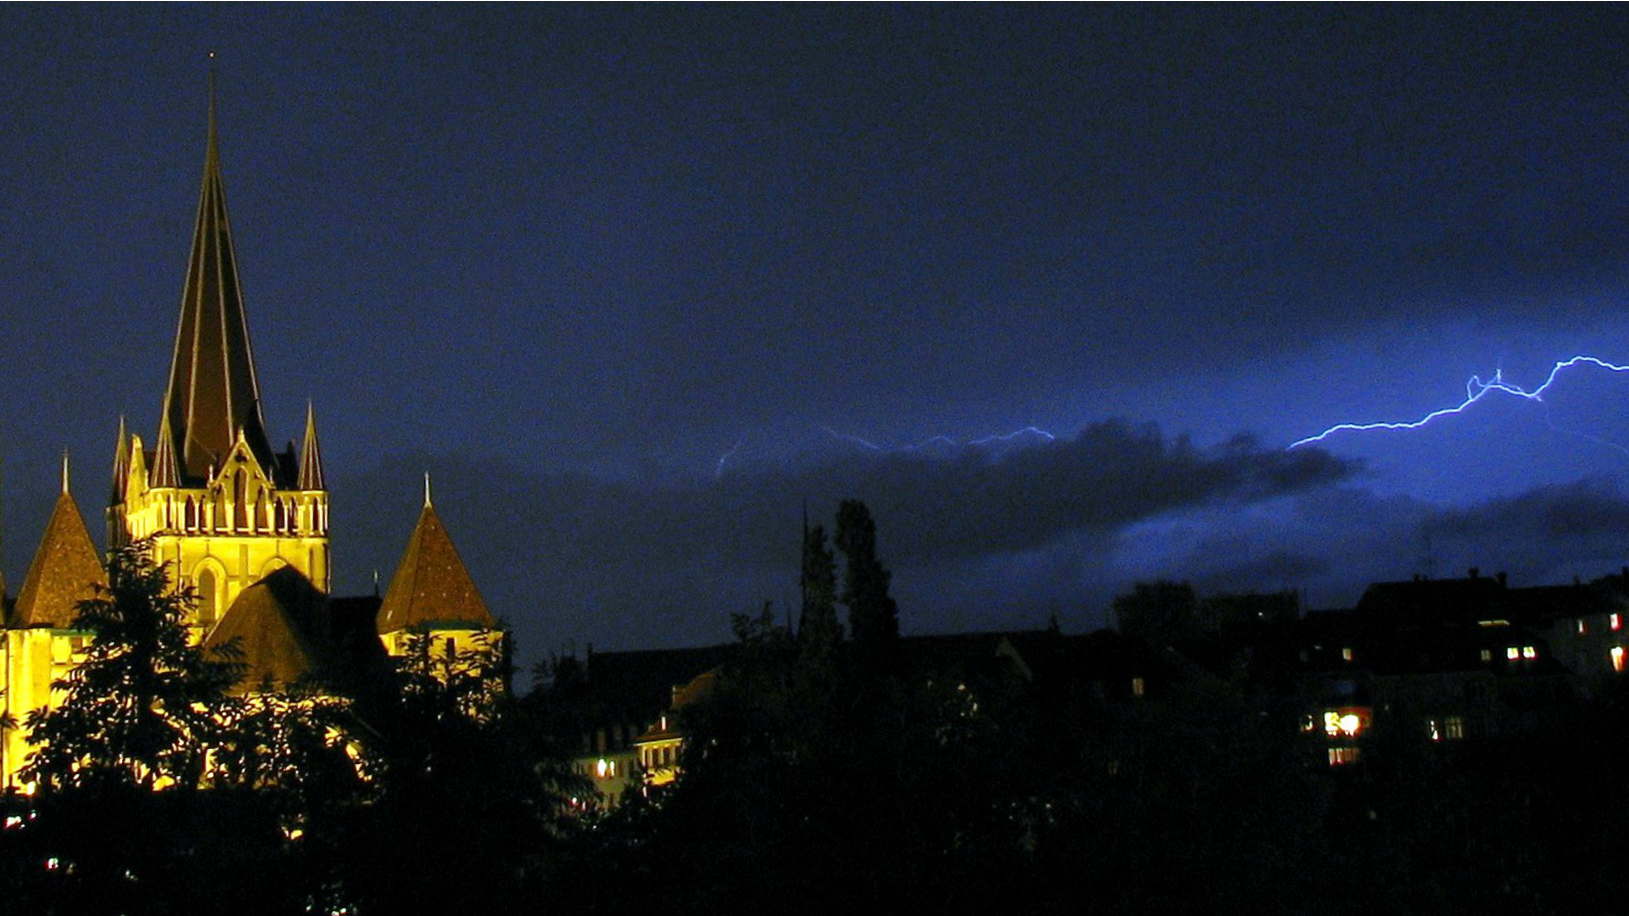 L'orage gronde depuis quelques années dans le ciel de l'Eglise réformée vaudoise (Photo: Ricardo Hurtubia/Flickr/CC BY-NC 2.0)